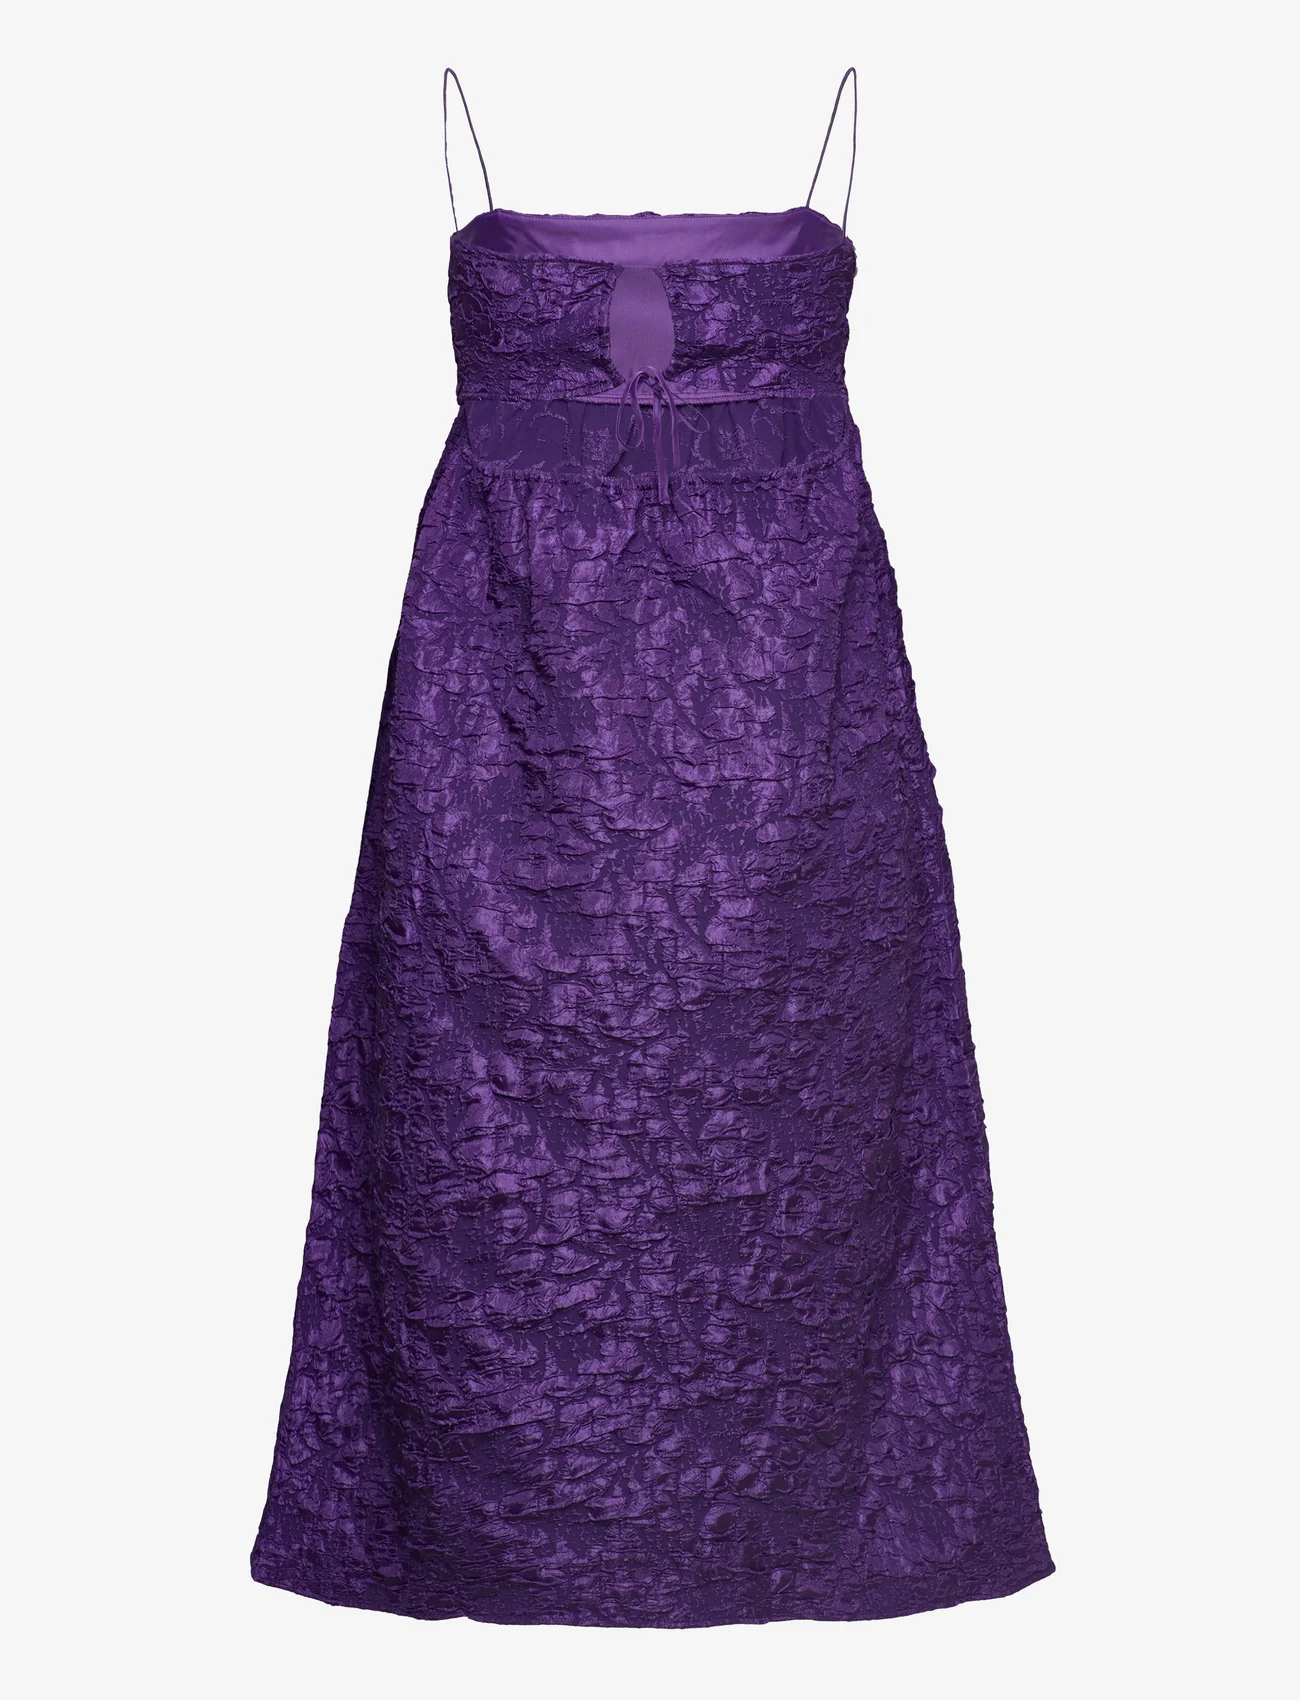 Envii - ENURANUS SL DRESS 7002 - festklær til outlet-priser - tillandsia purple - 1